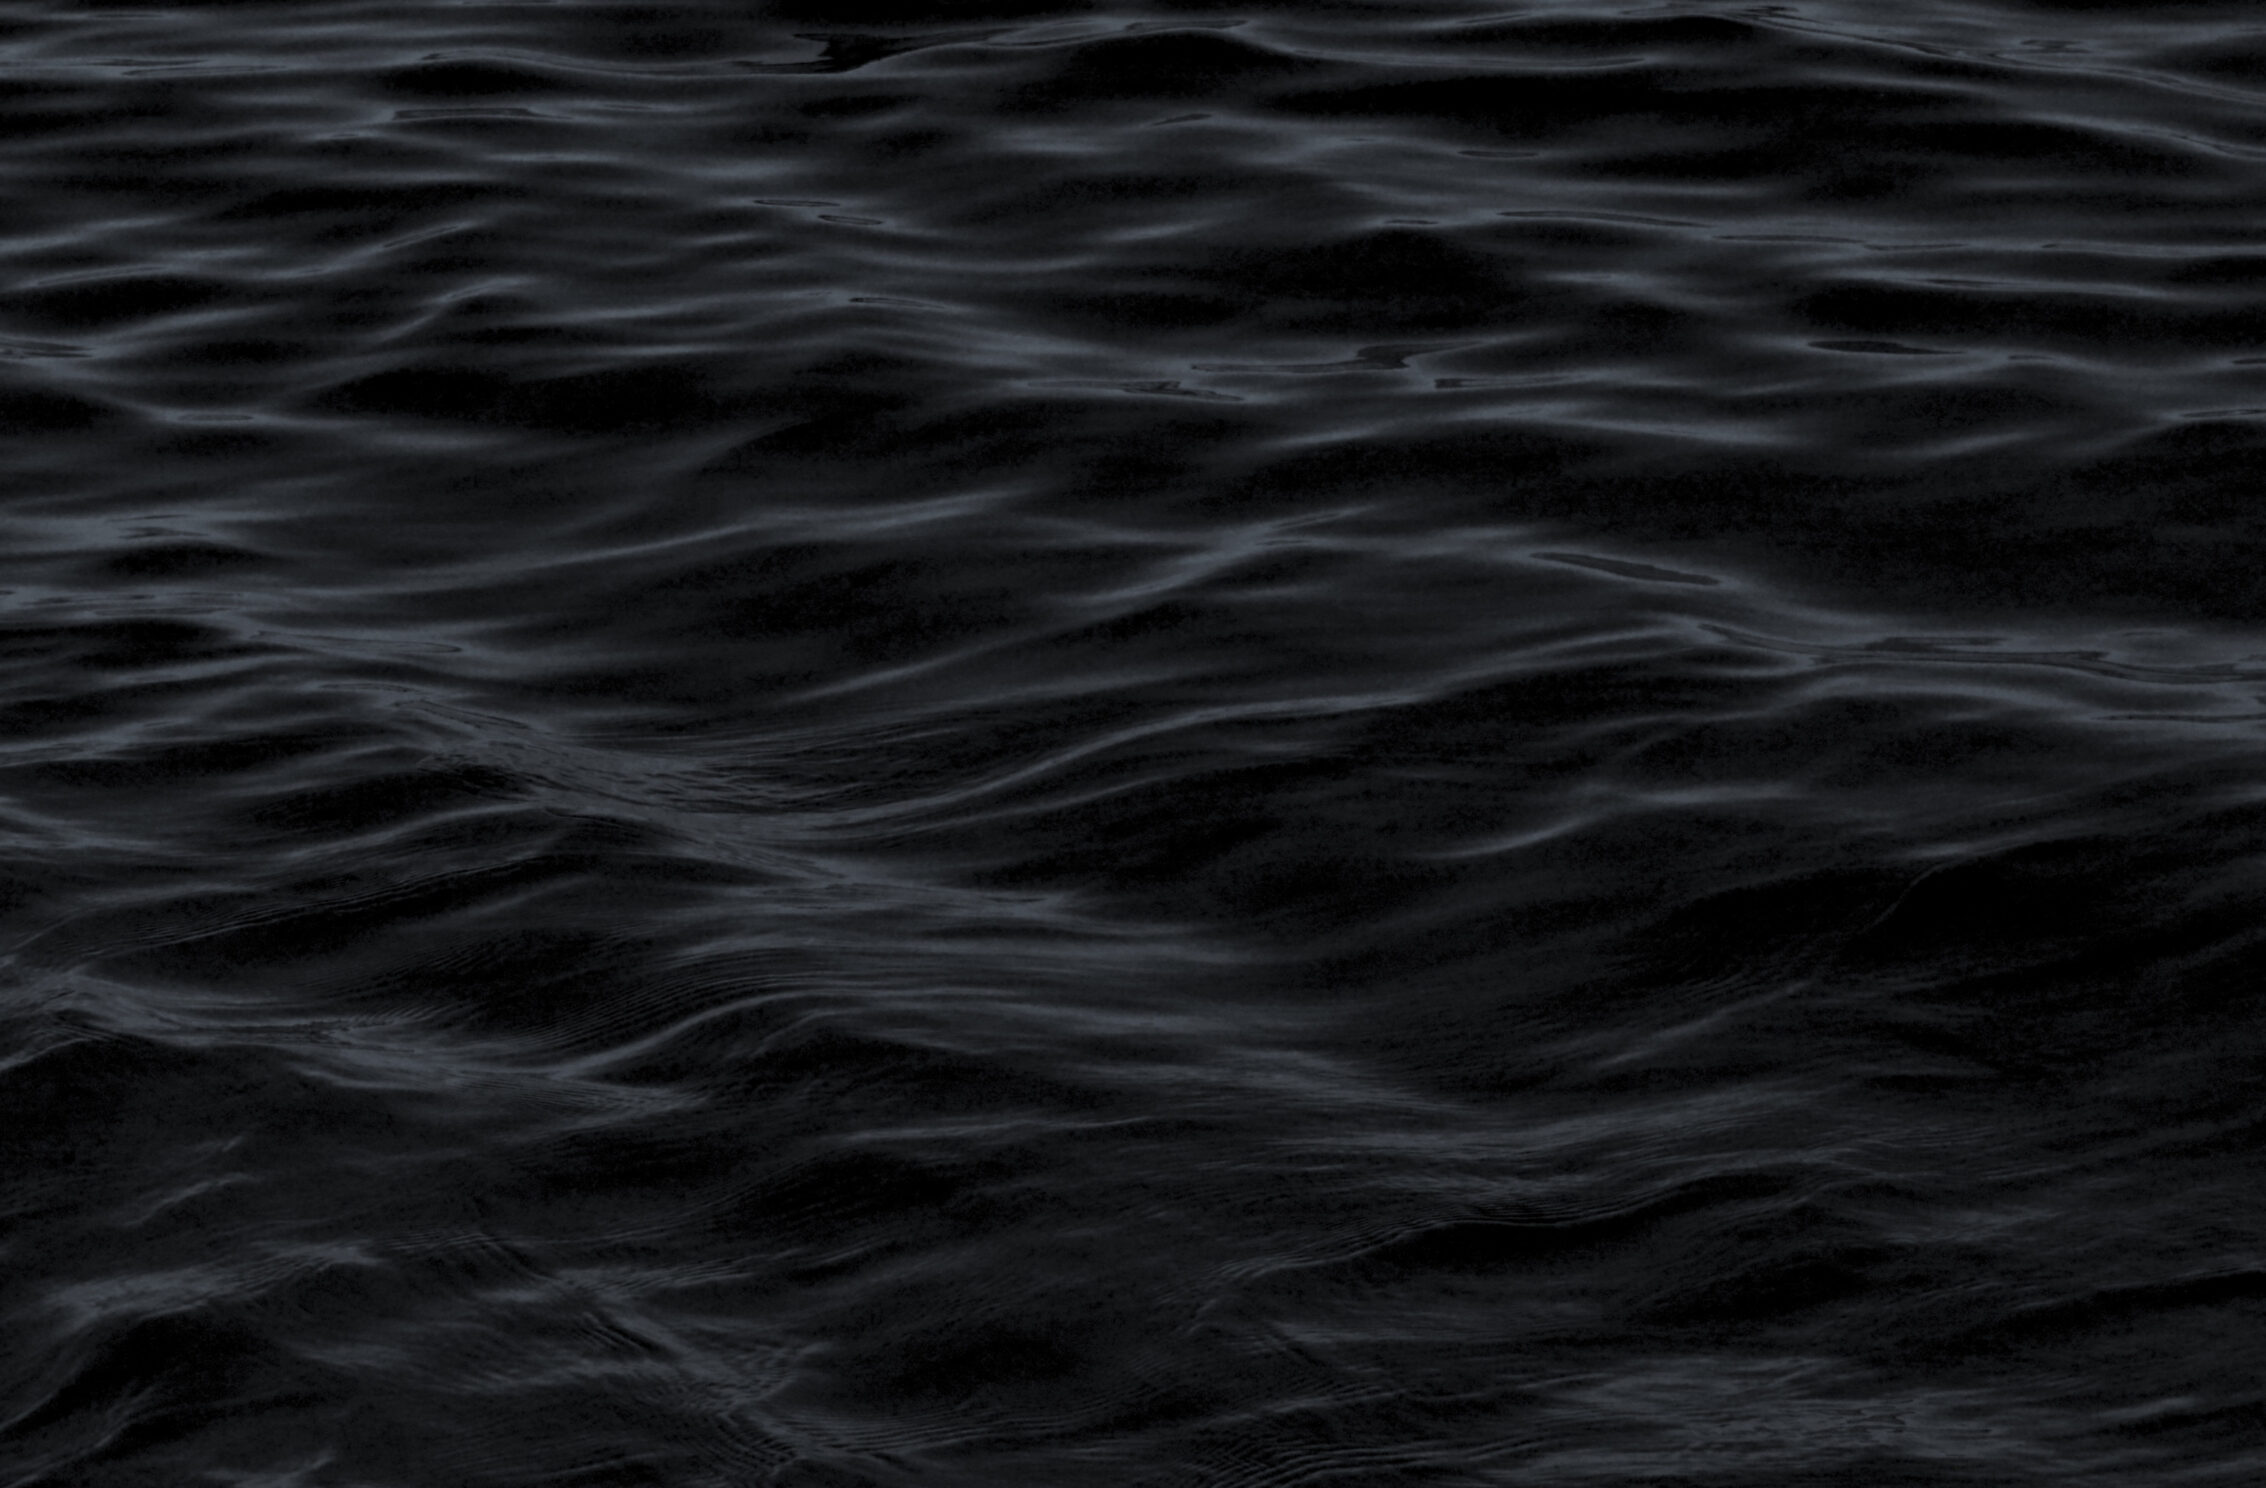 2266x1488 iPad Mini wallpapers Dark Water Waves Sea Pattern iPad Wallpaper 2266x1488 pixels resolution